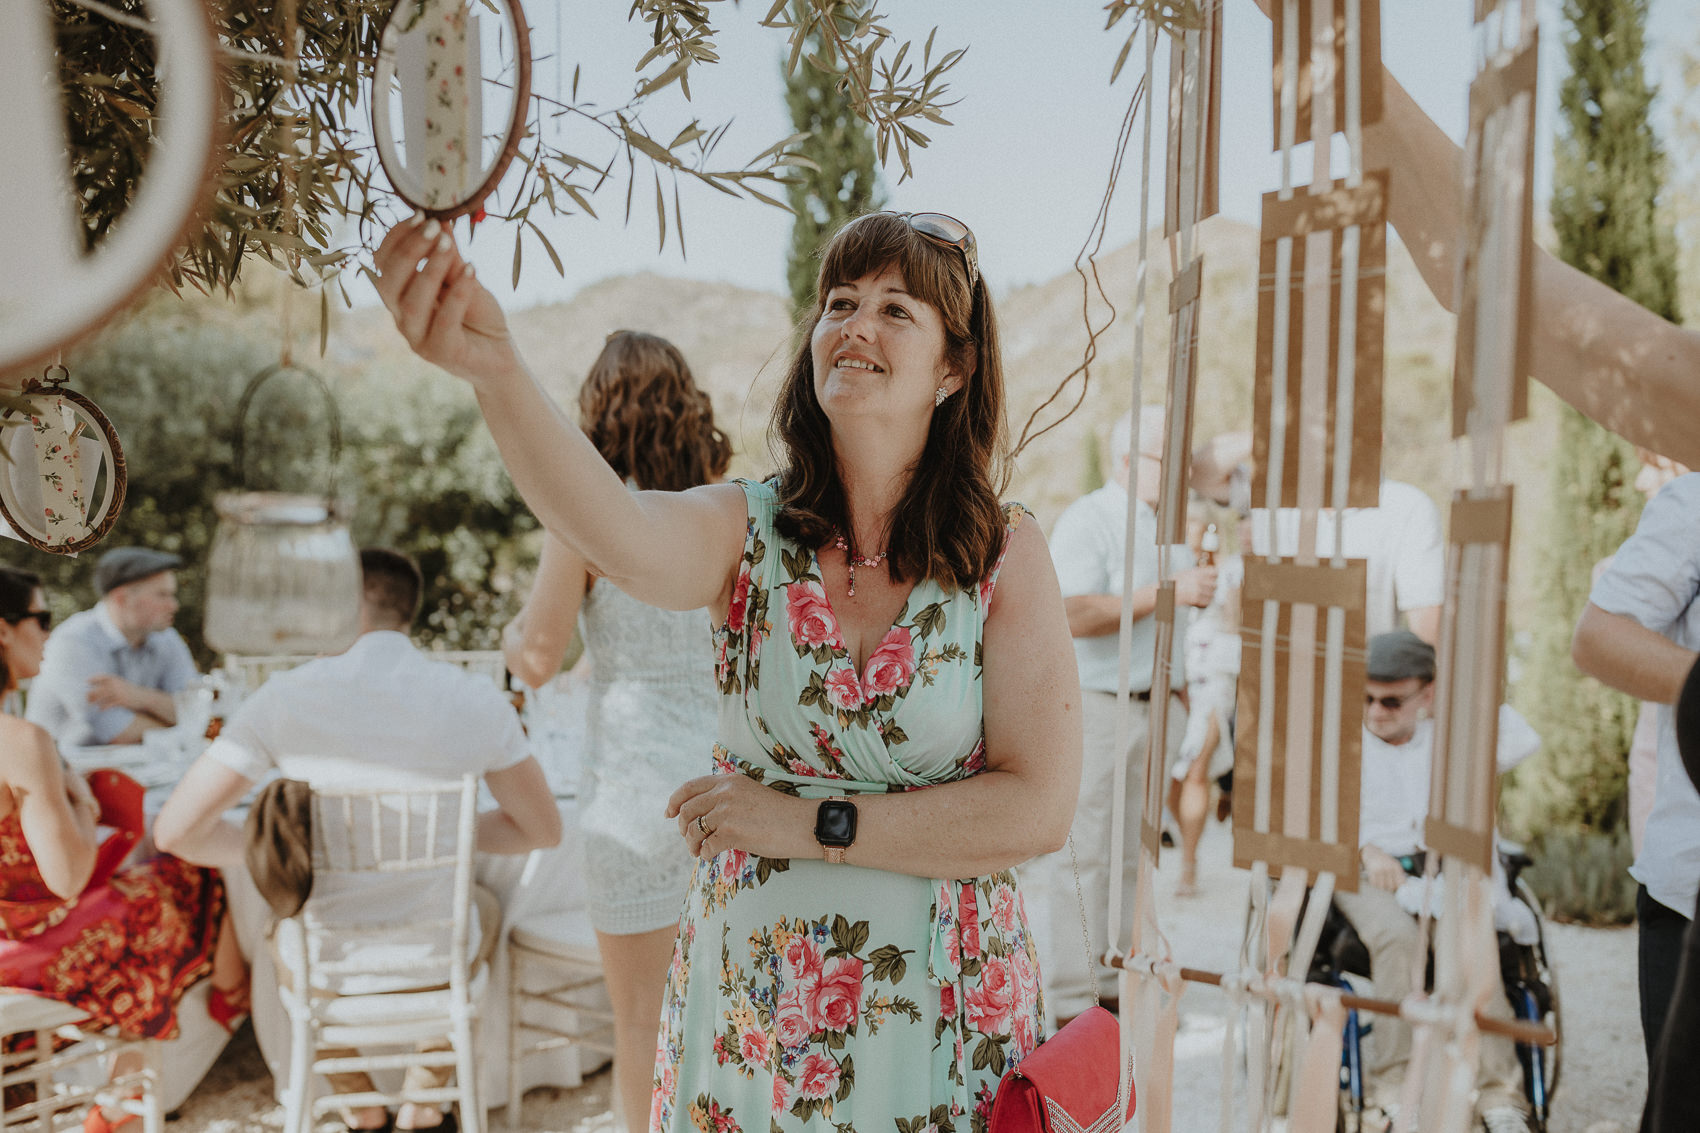 Sarah & Bill | Summer wedding at Cortijo Rosa Blanca | Marbella - Spain 118